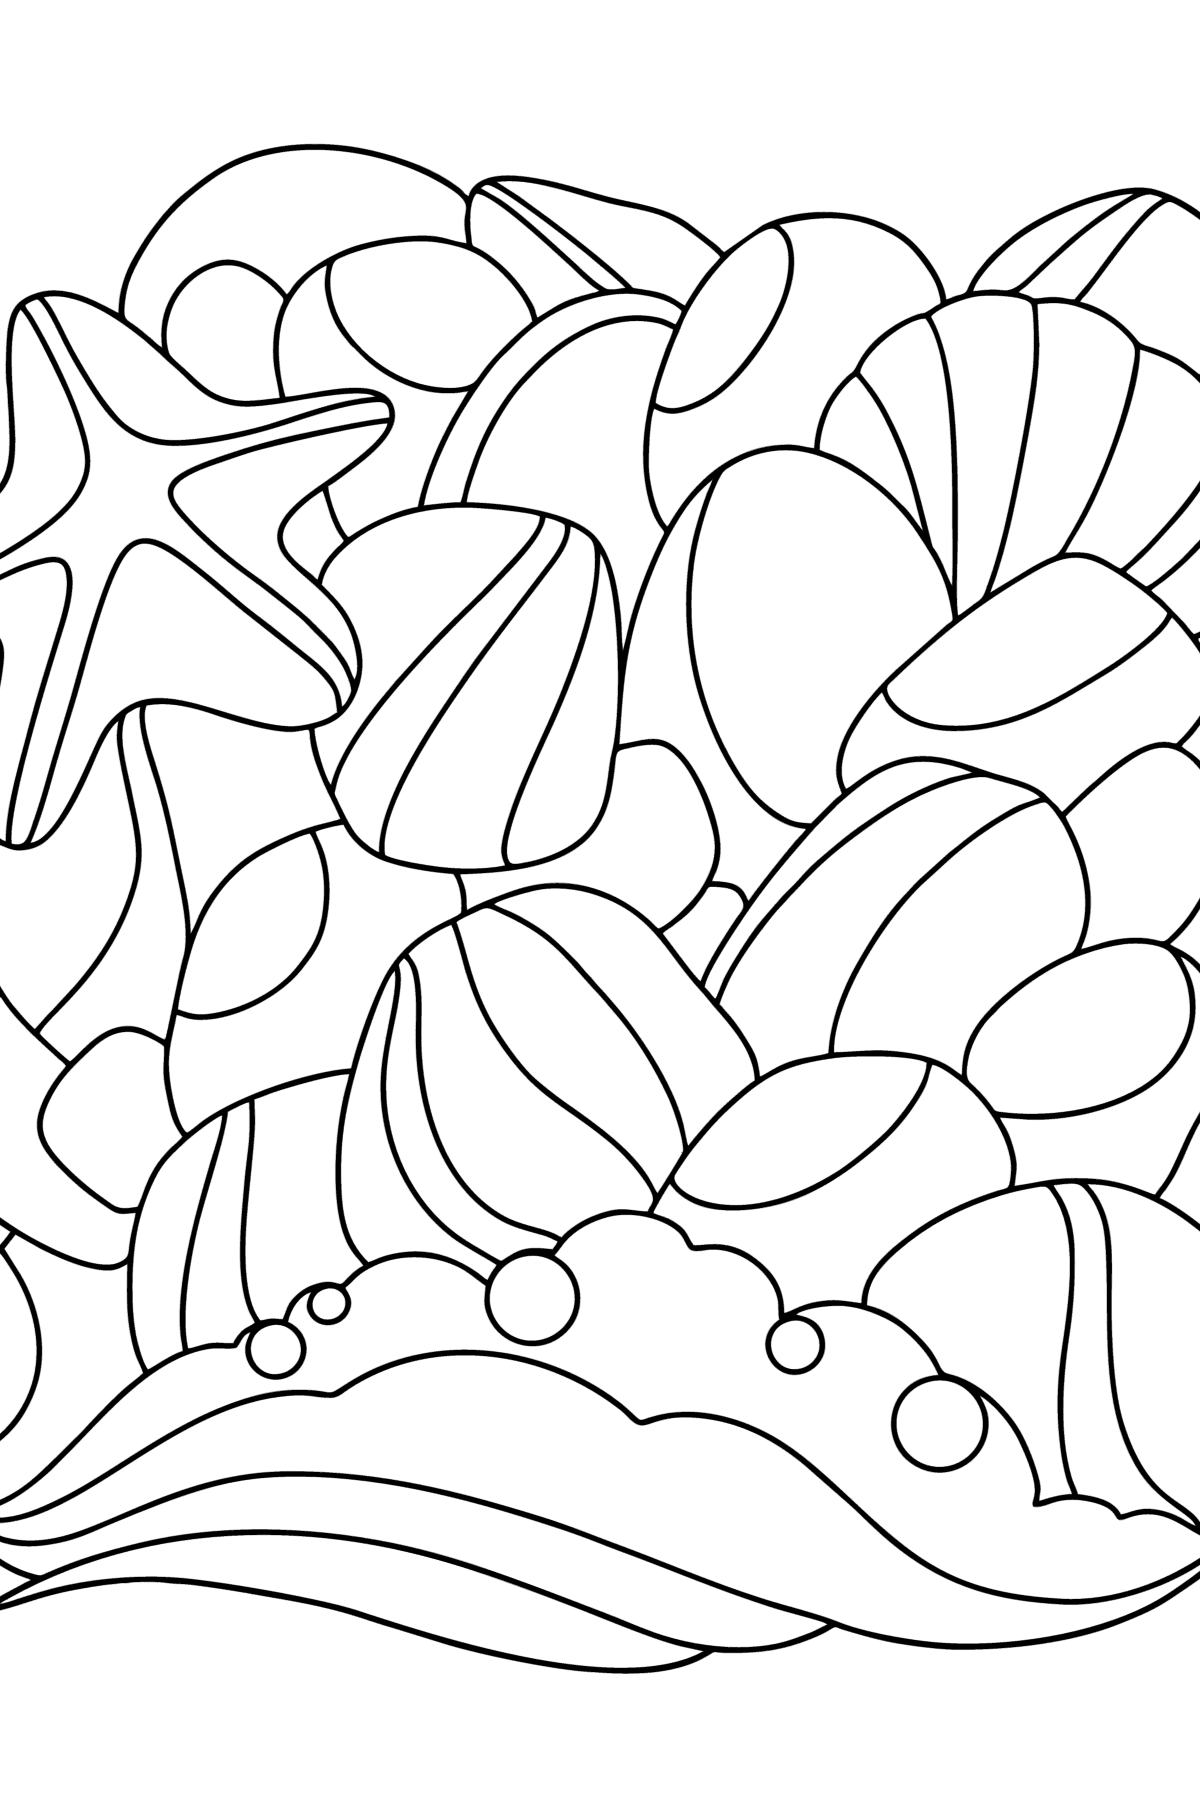 Desenho para colorir de Doodle Sea Pebbles - Imagens para Colorir para Crianças